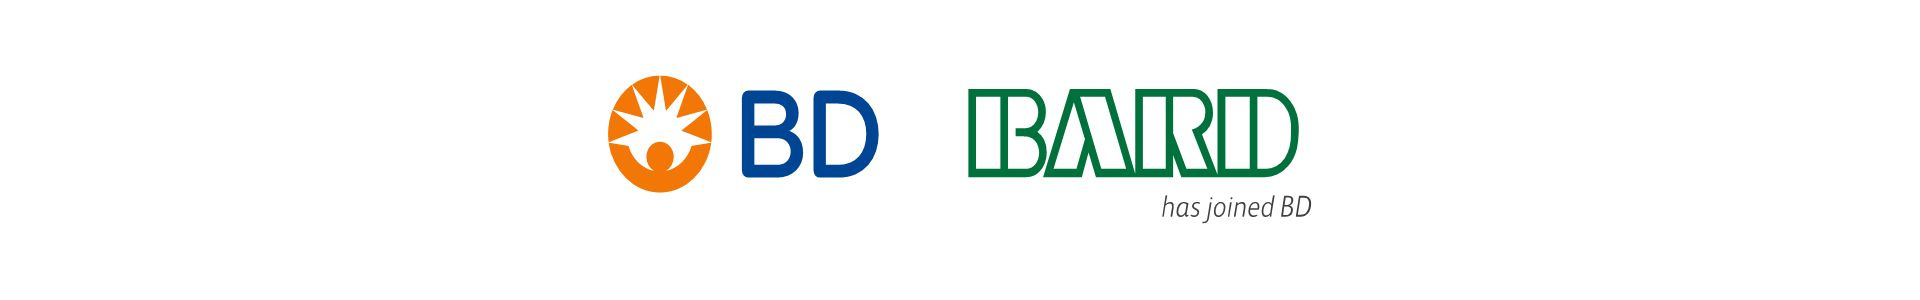 BD BARD - 